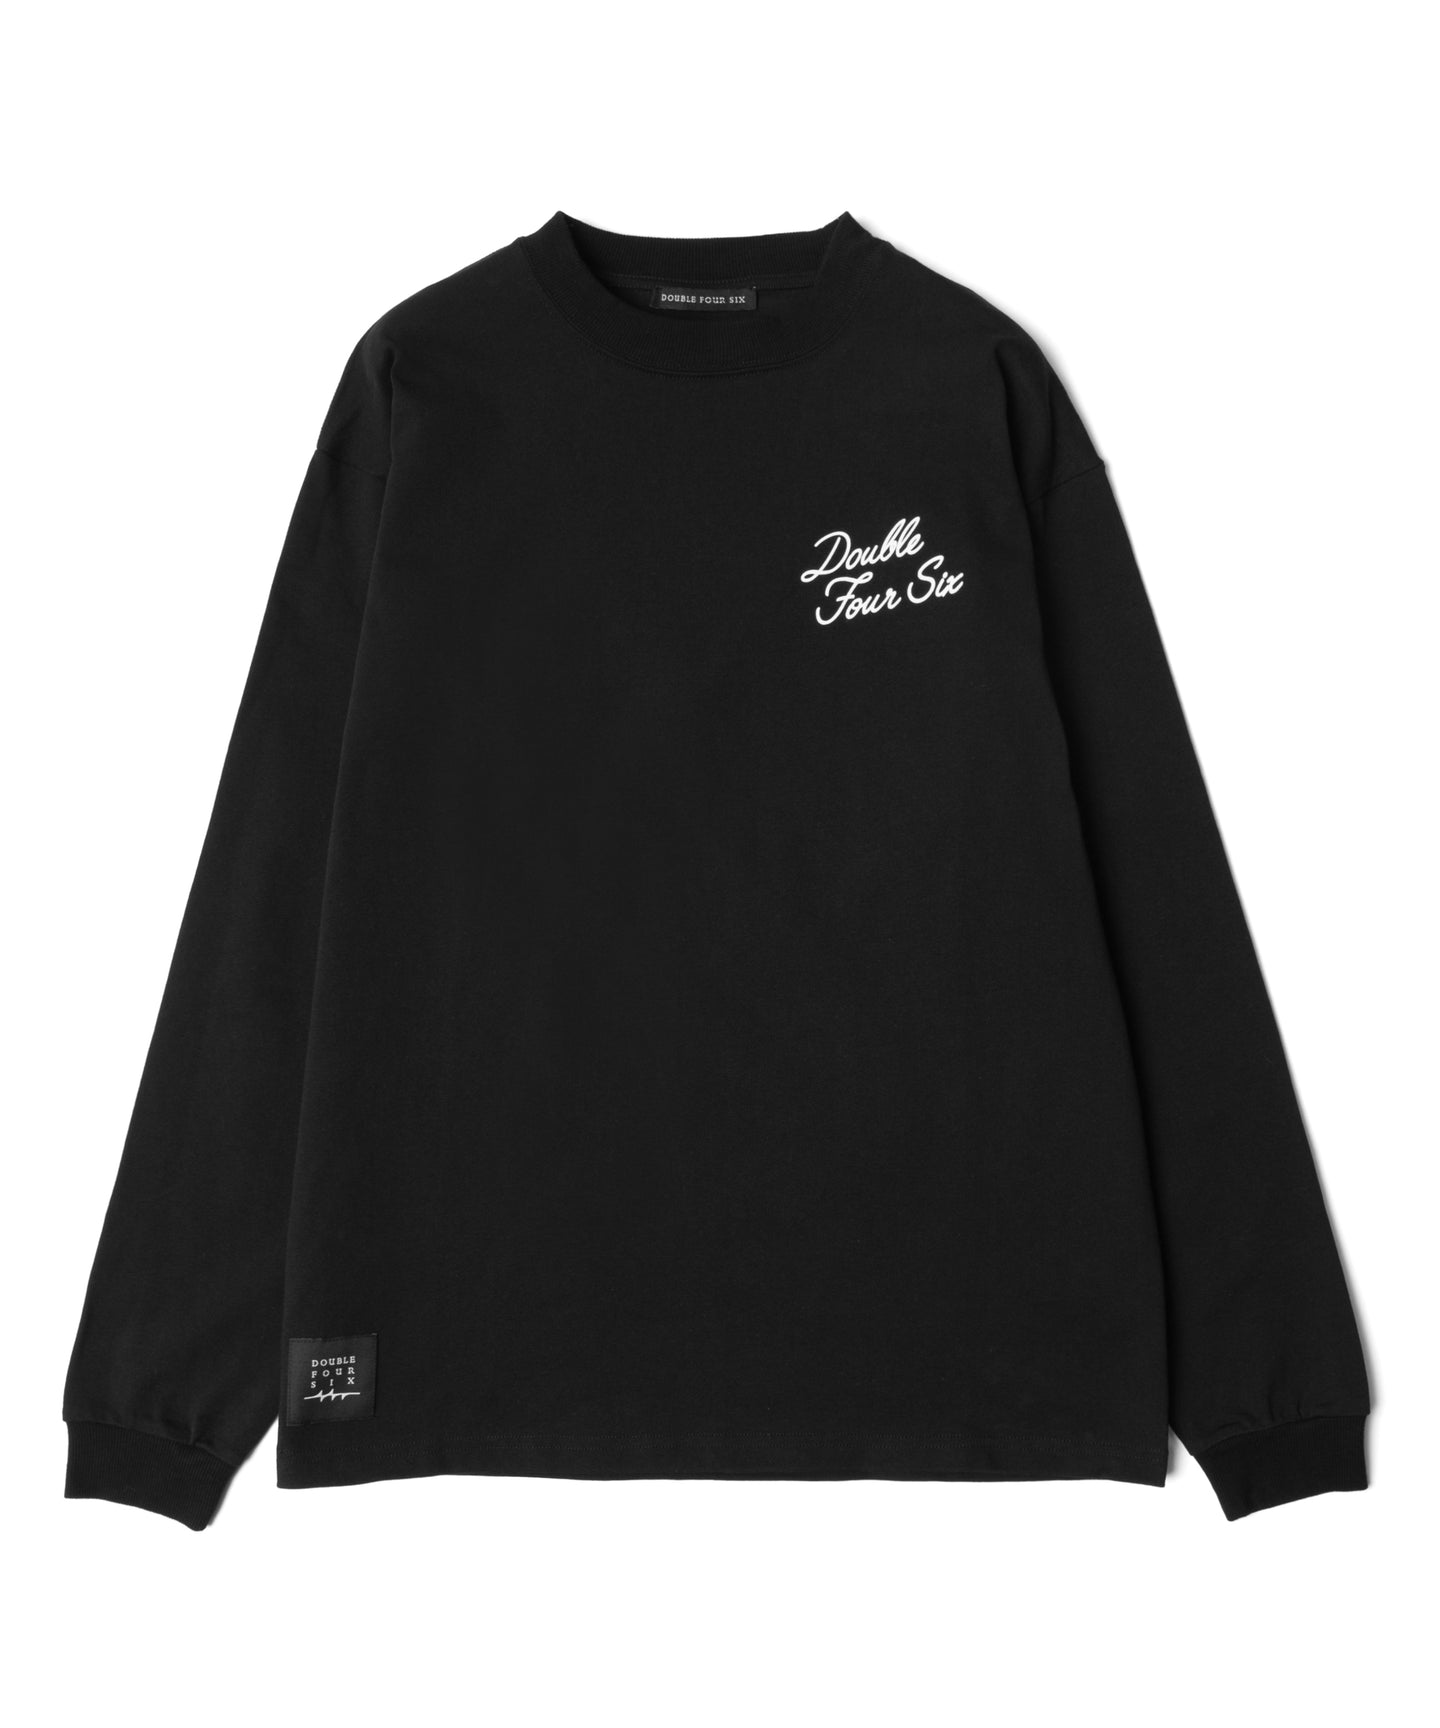 完売御礼】Capsule Collection 003 T-shirt – 446 - DOUBLE FOUR SIX -